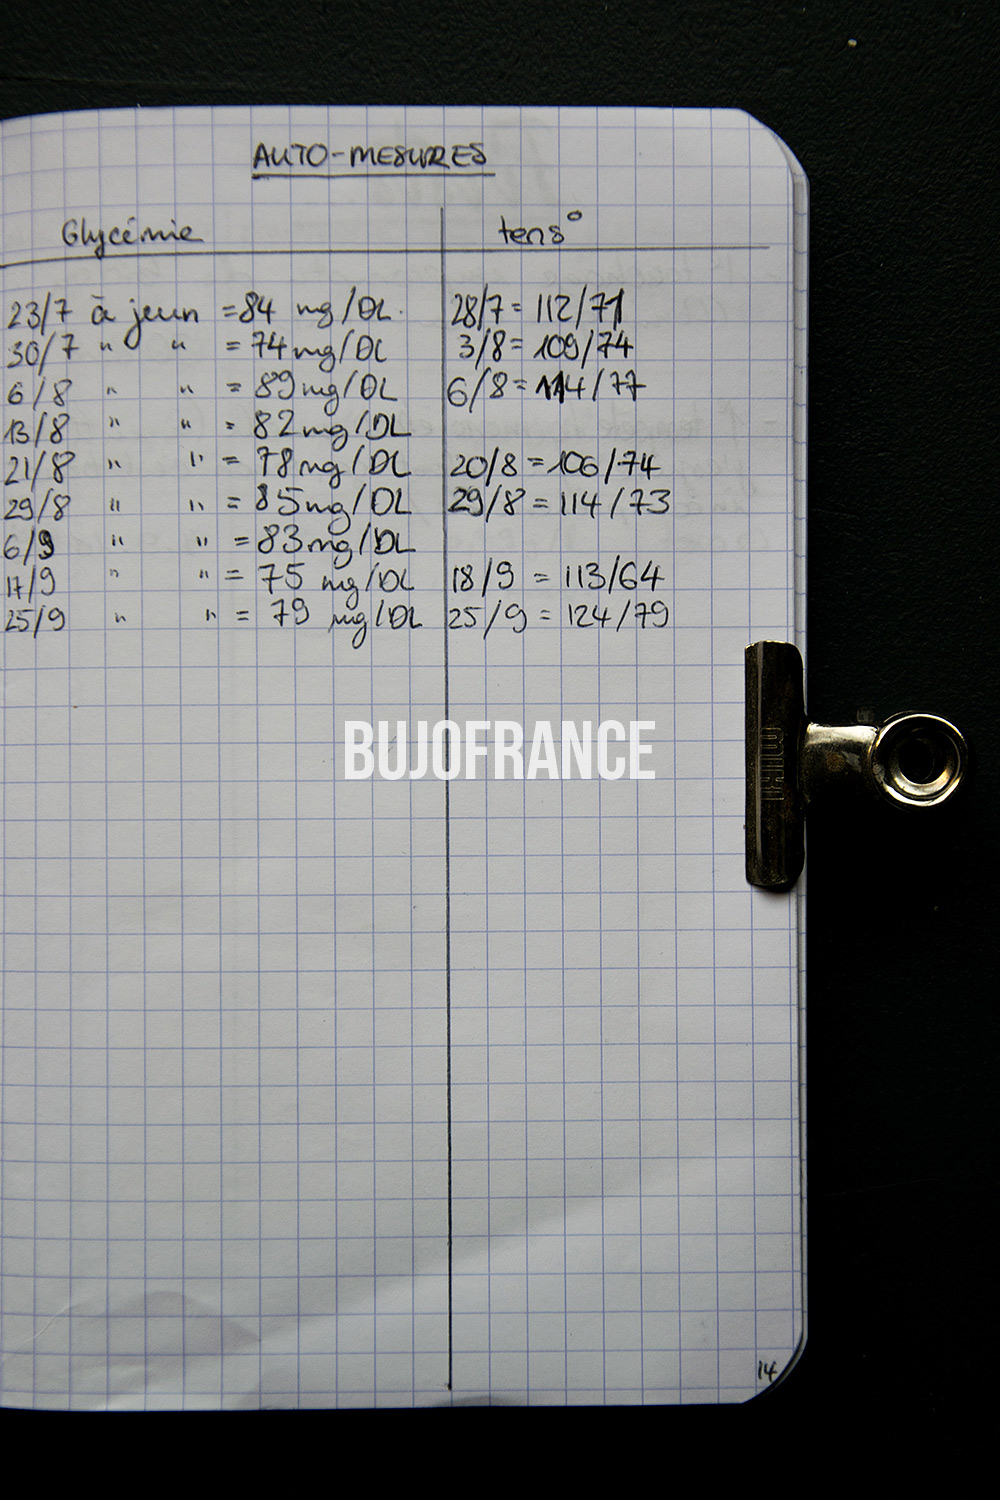 bullet-journal-bujofrance-carnet-grossesse-7